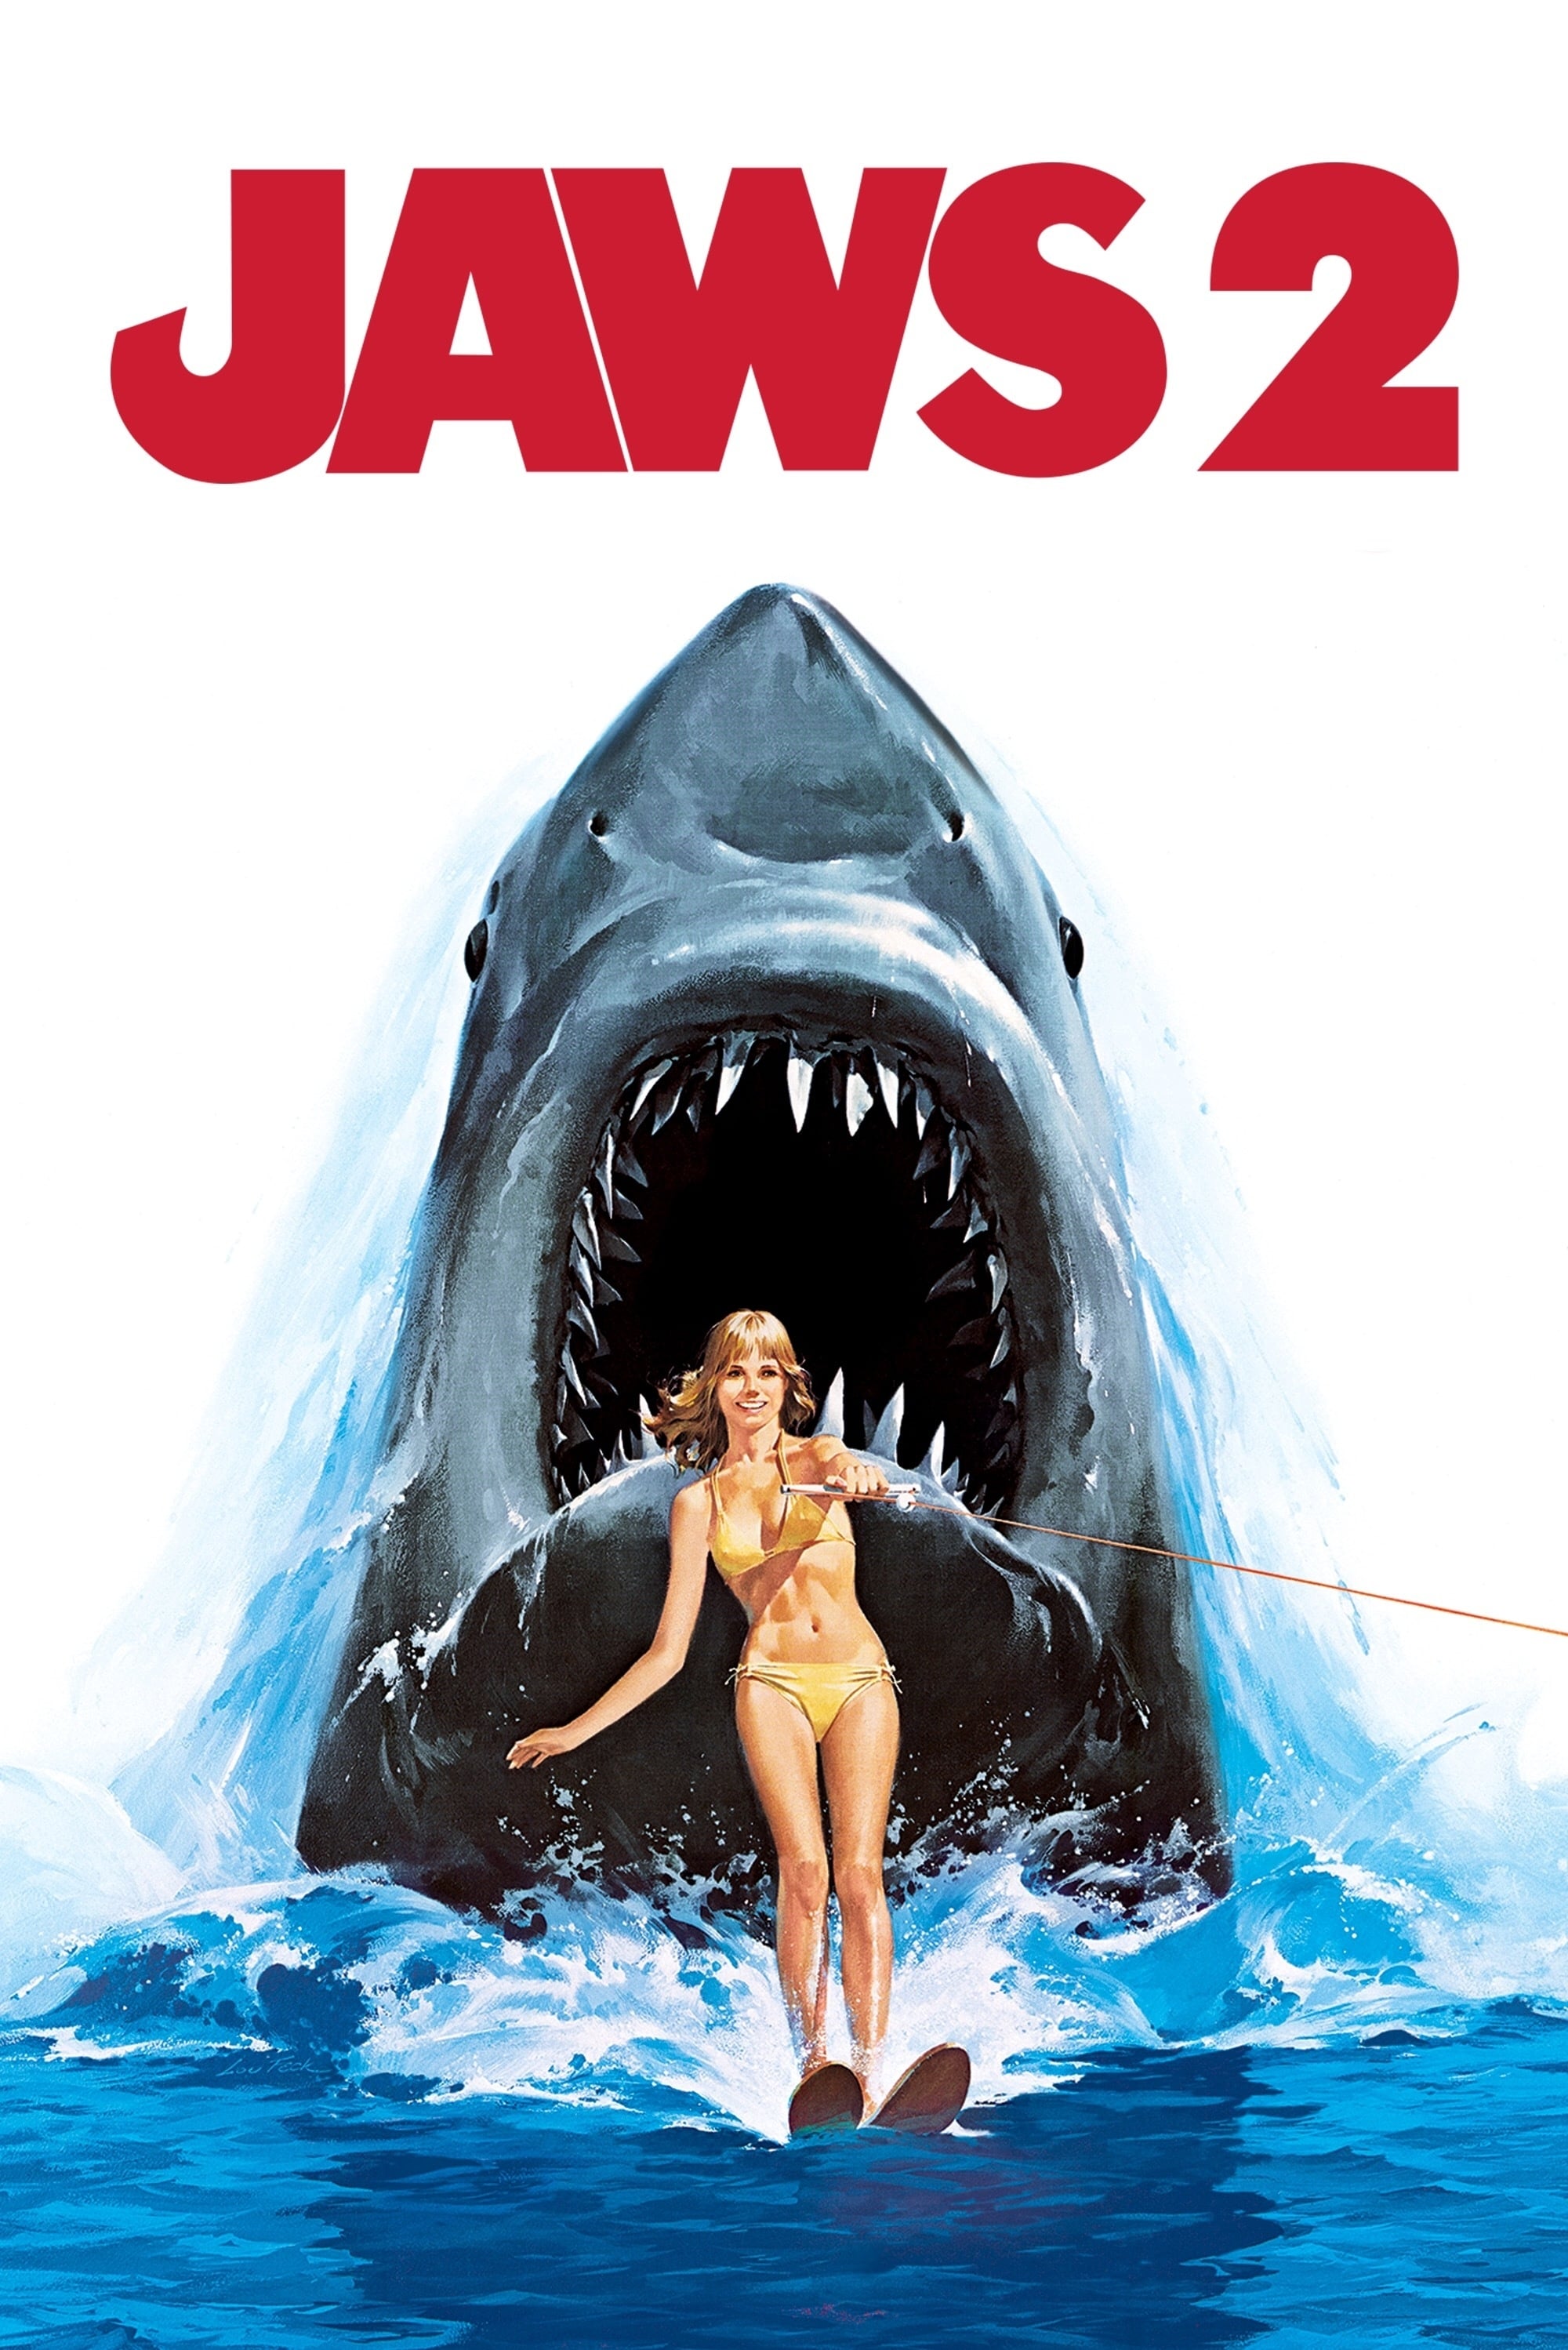 Tiburón 2 (1978)